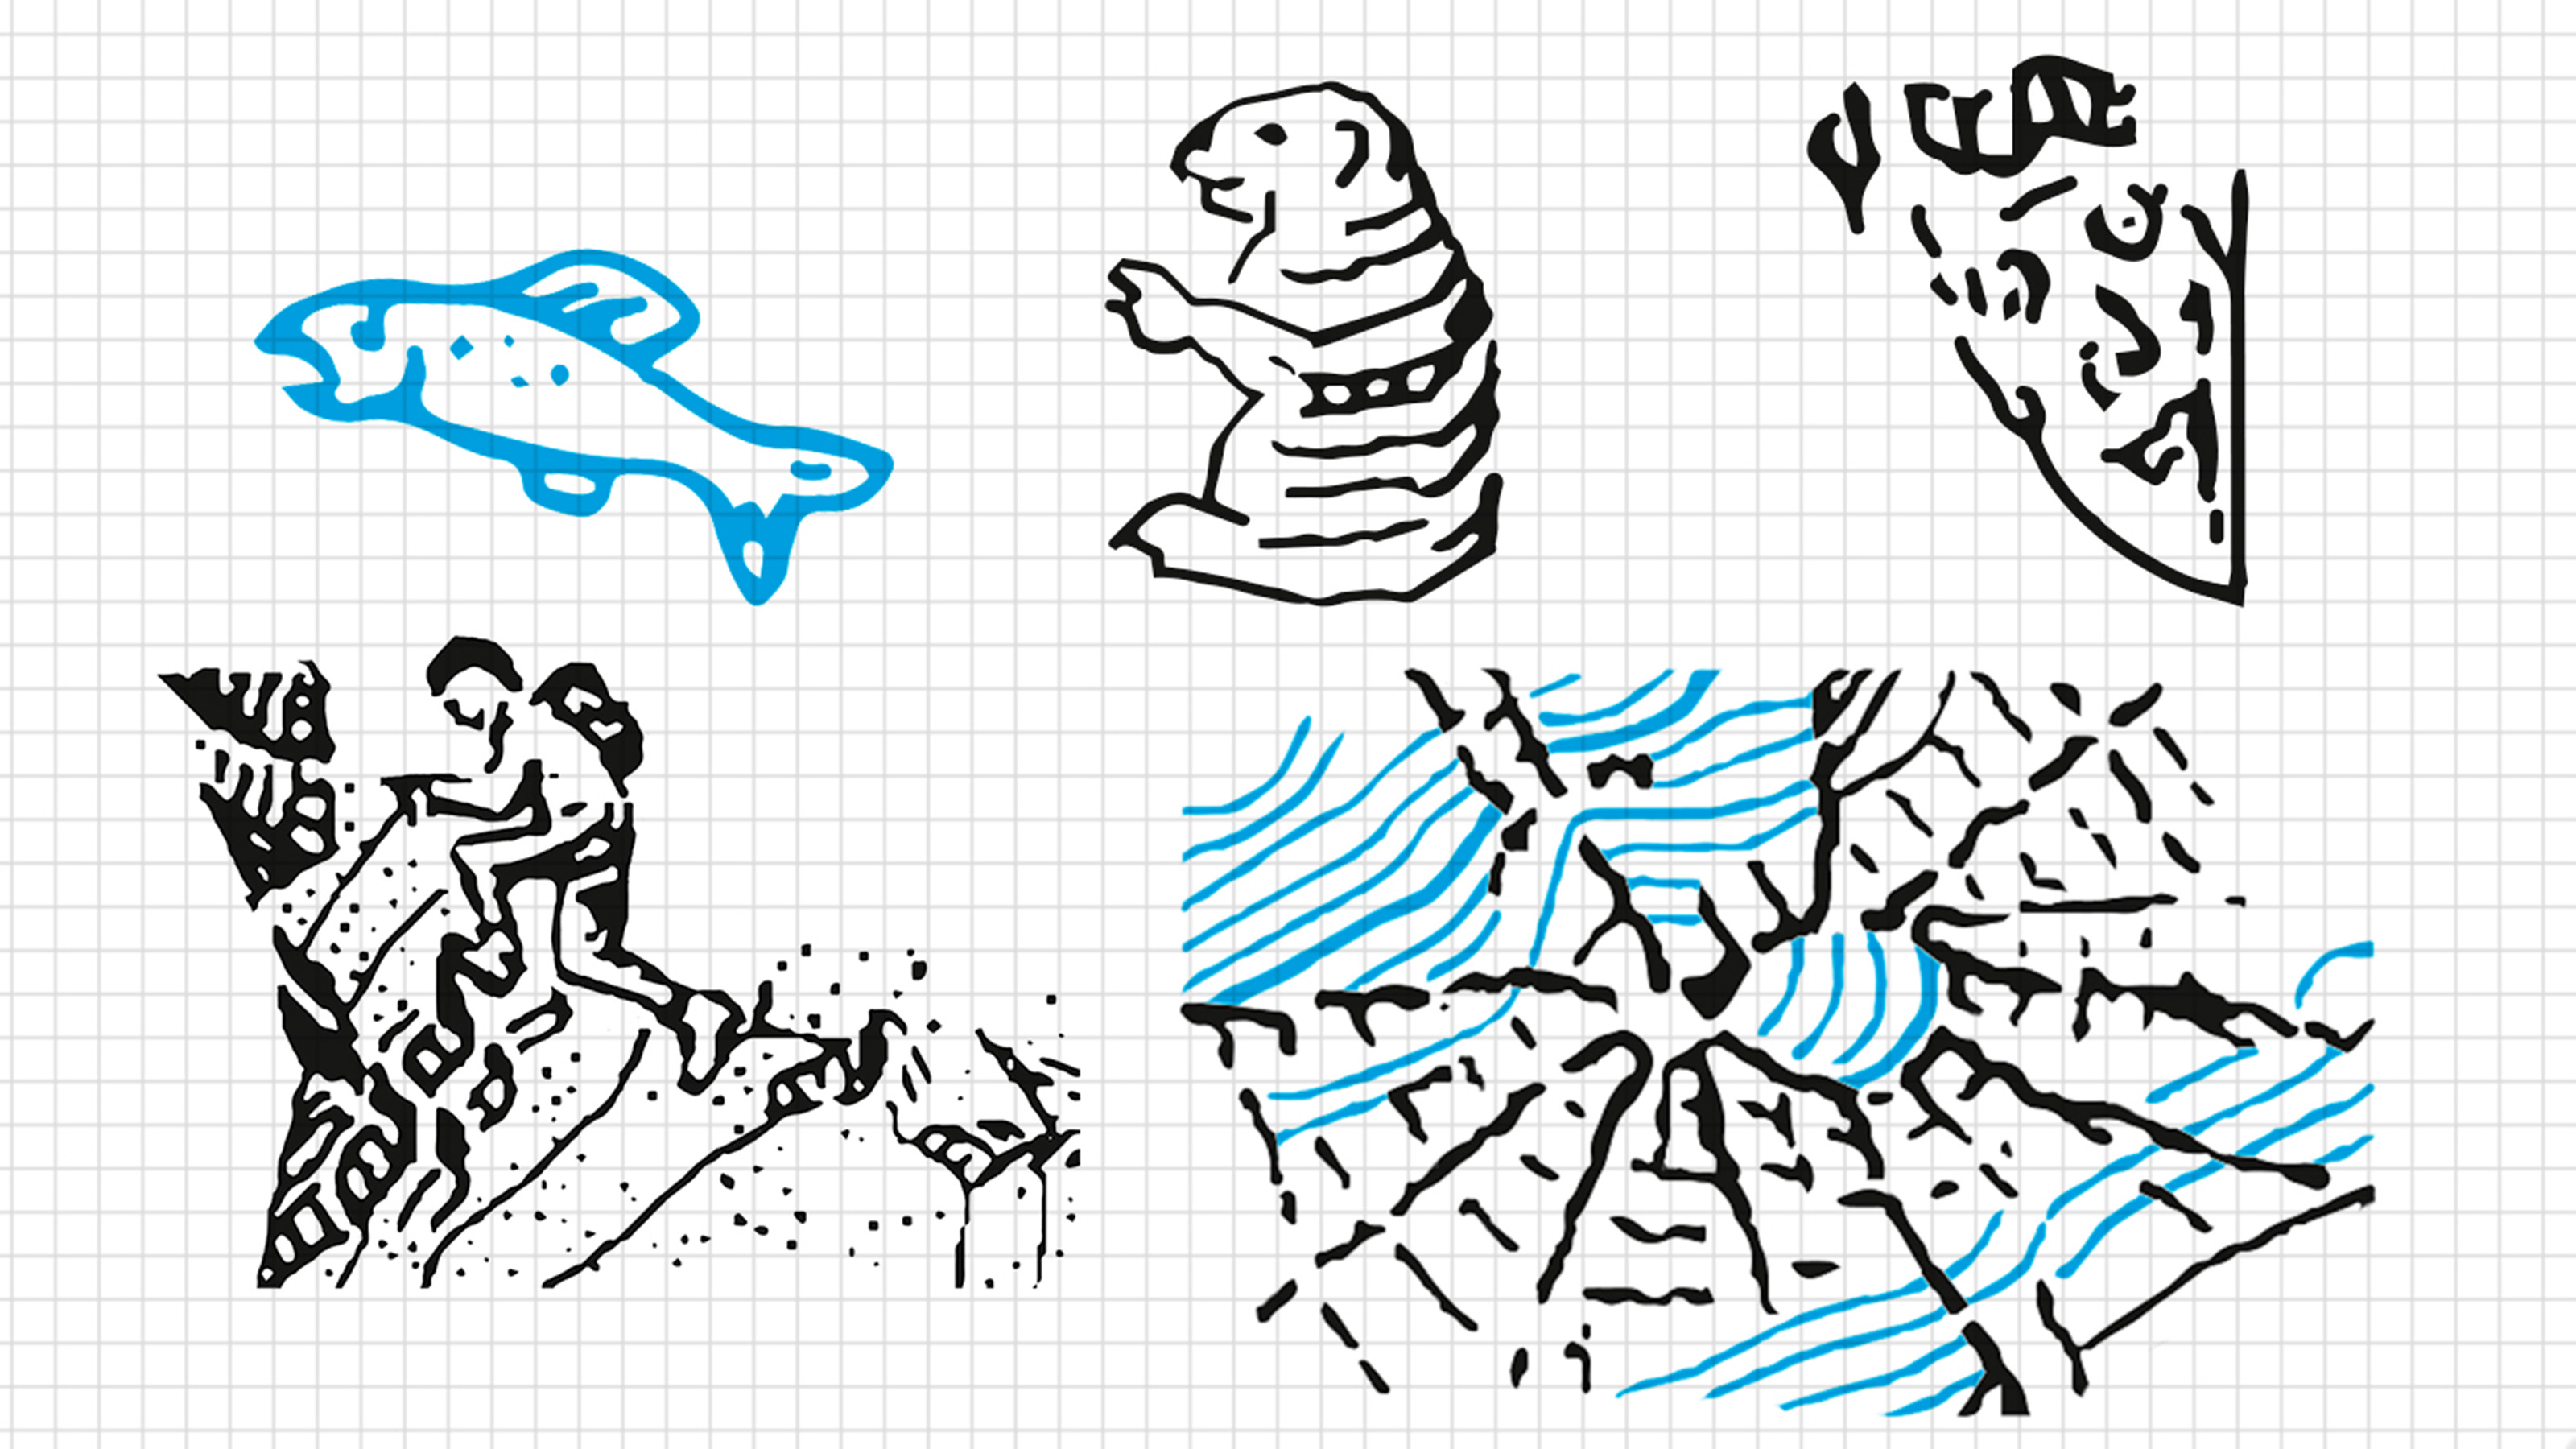 Fünf Zeichnungen, die in die Landeskarten hineingeschmuggelt wurden: Ein Fisch, ein Murmeltier, ein Gesicht, ein Bergsteiger und eine Spinne.